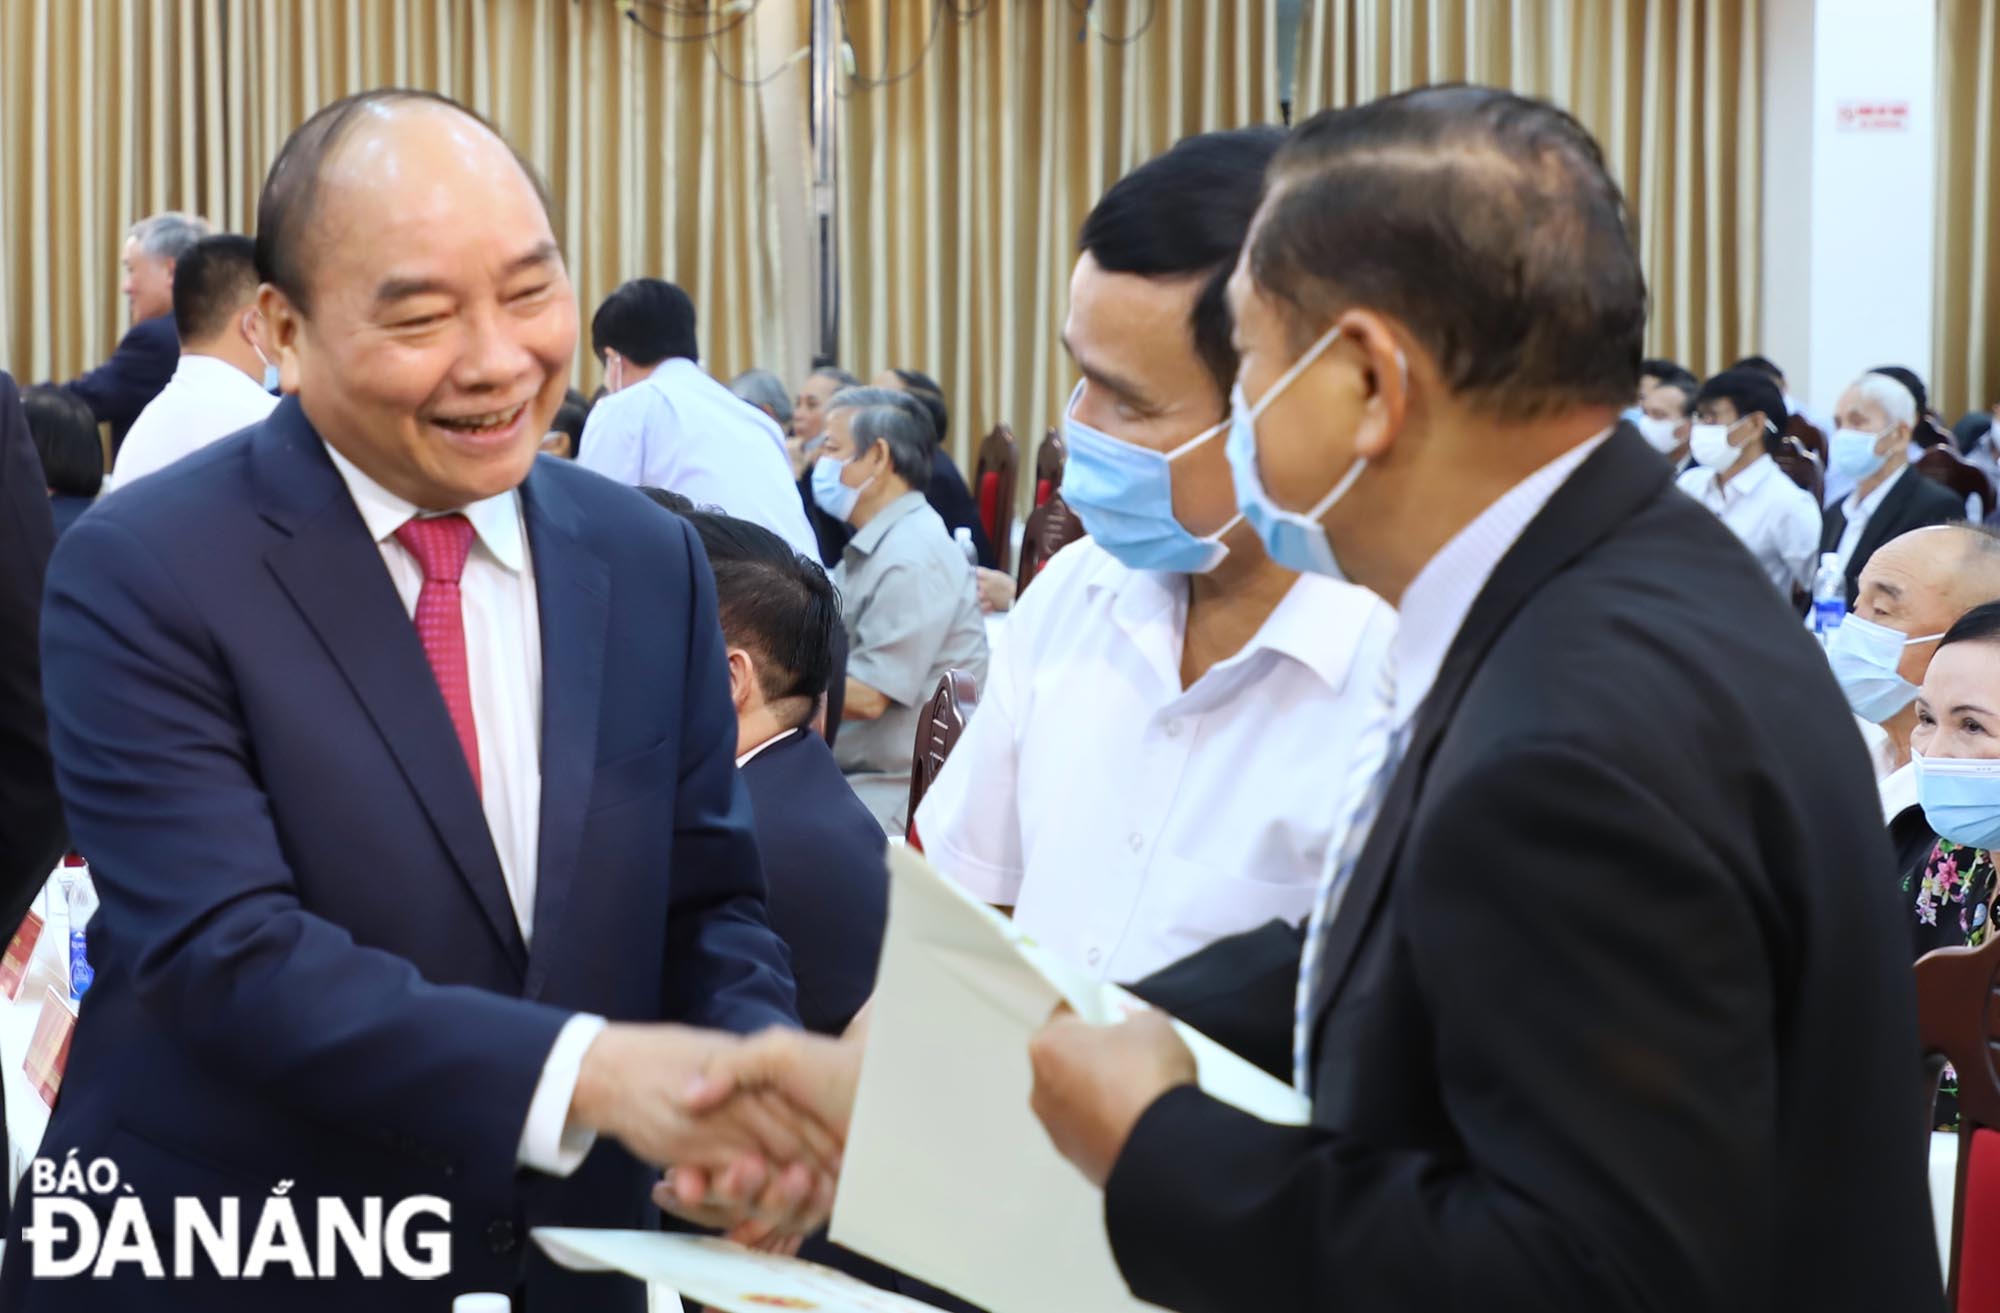  Chủ tịch nước Nguyễn Xuân Phúc (giữa) tặng quà cán bộ cấp cao nghỉ hưu khu vực miền Trung. Ảnh: NGỌC PHÚ